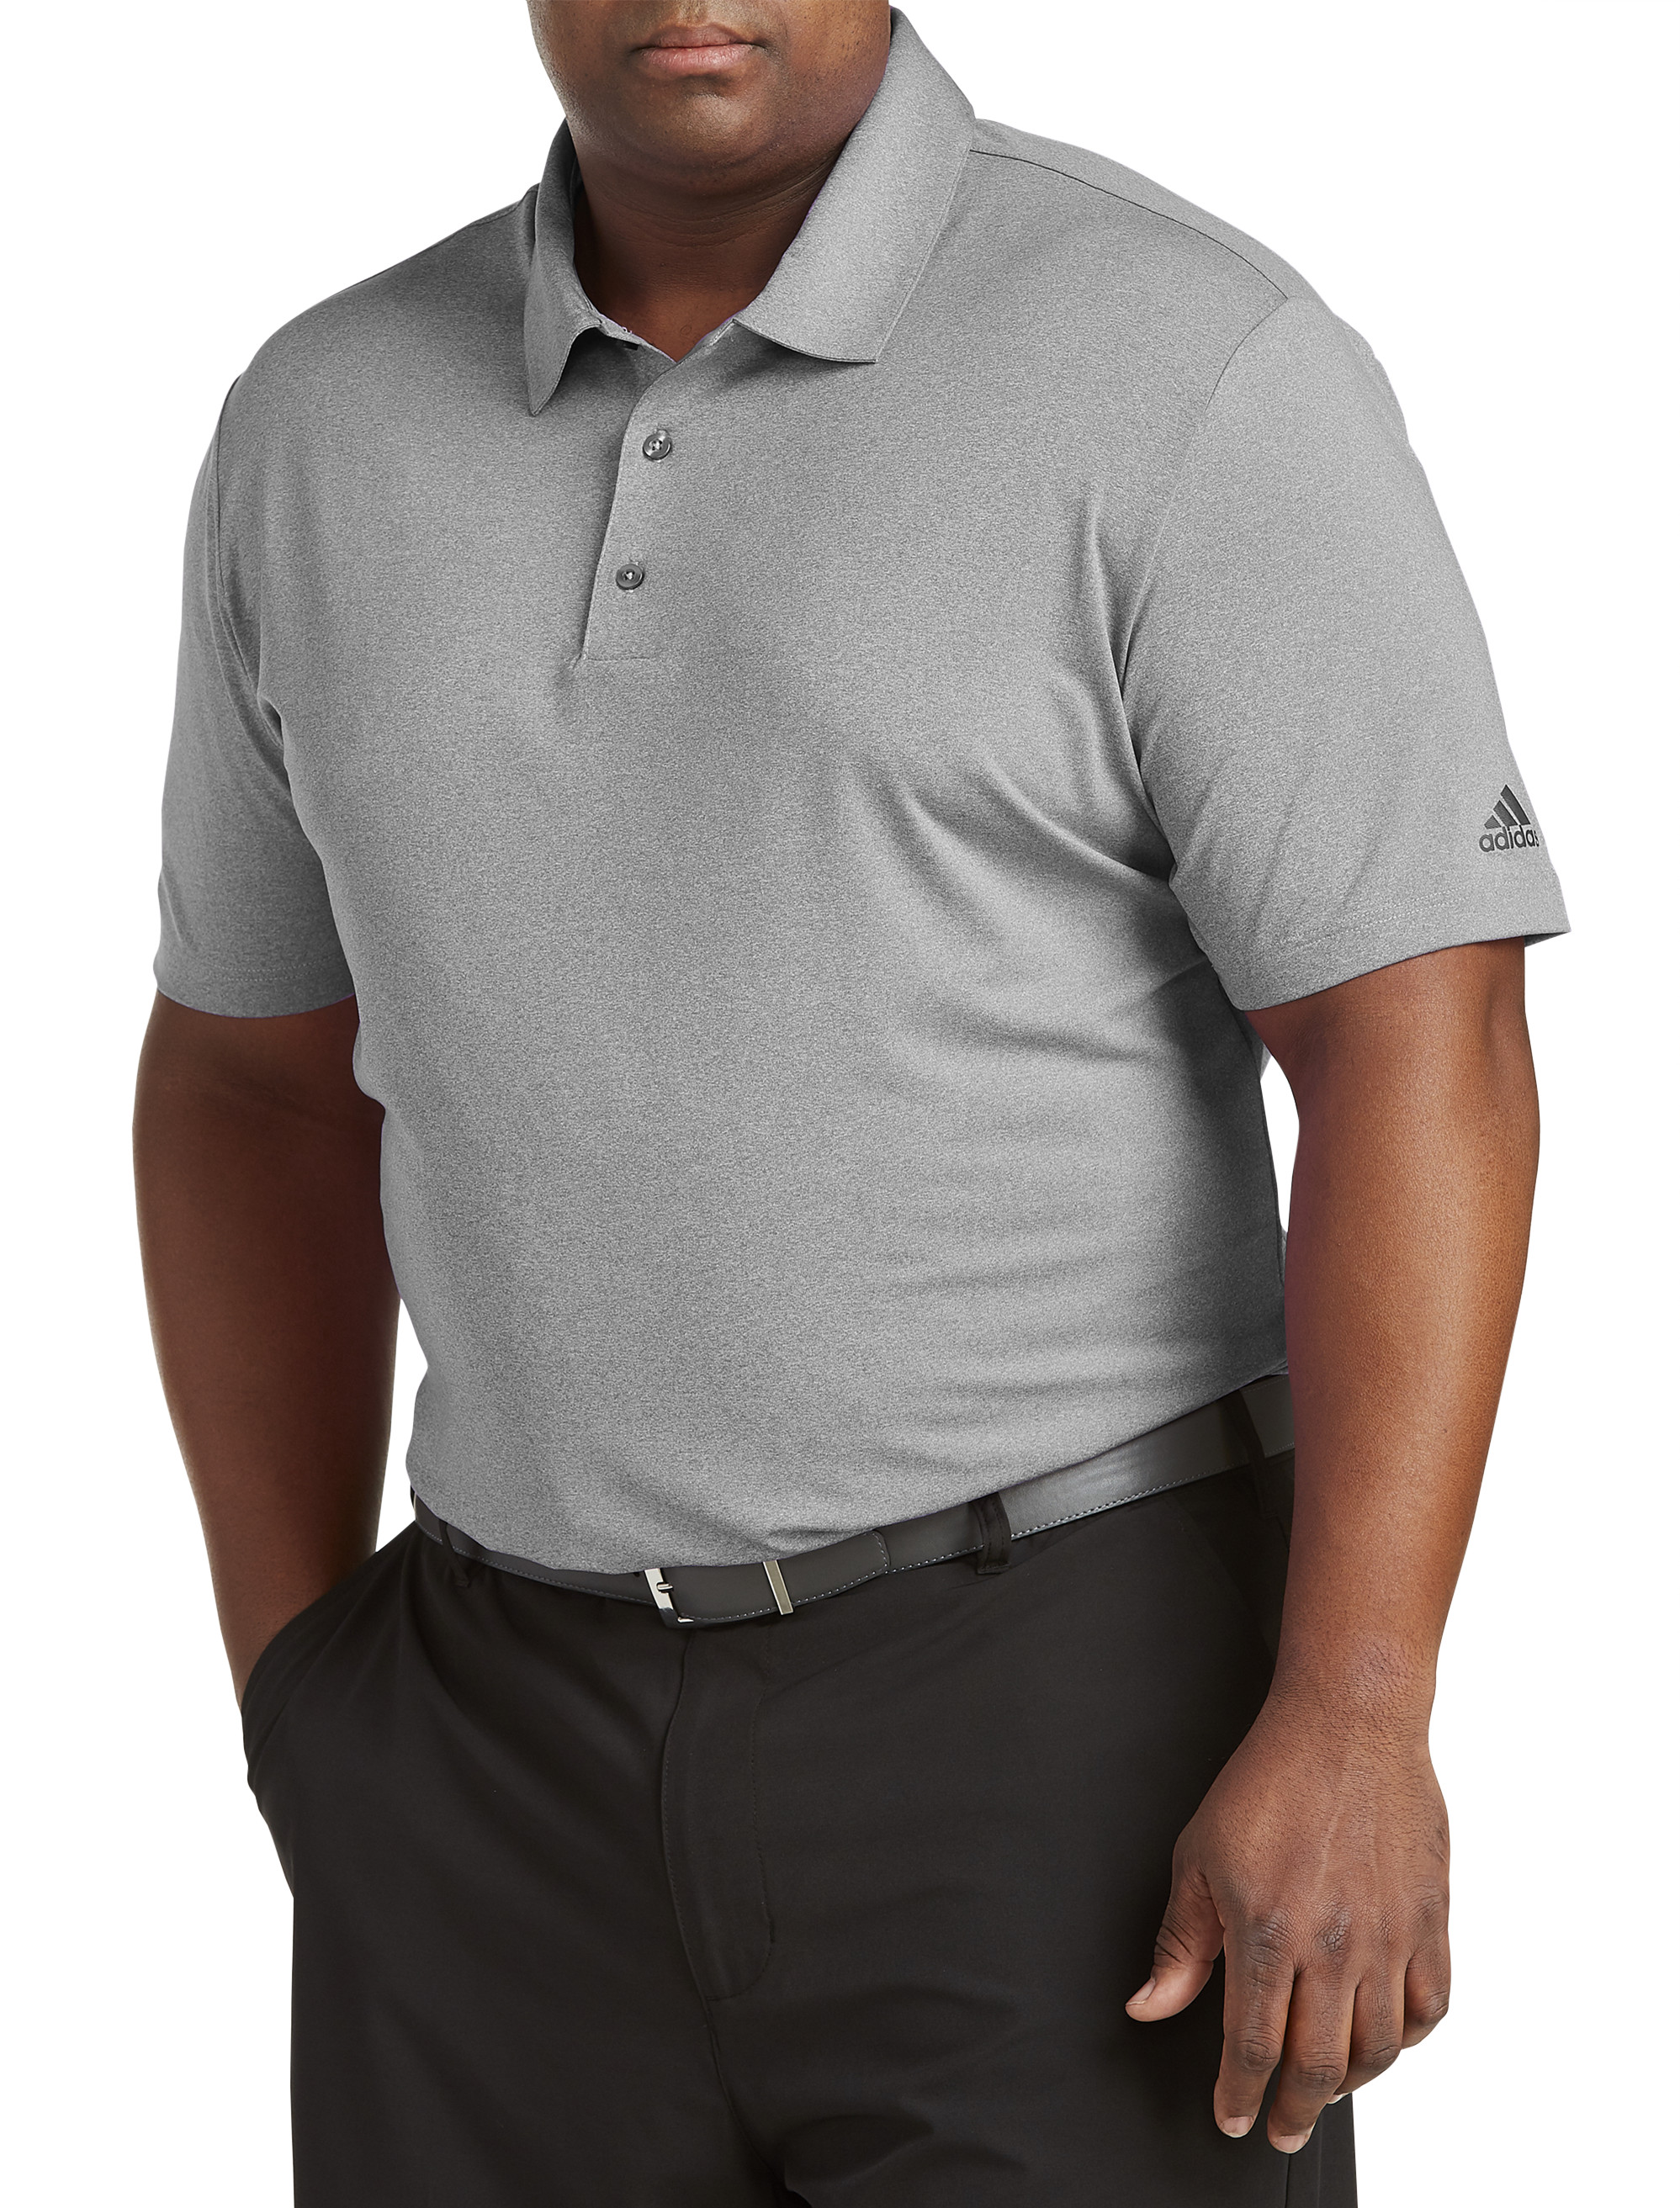 + Tall | adidas Climacool Golf Polo Shirt DXL